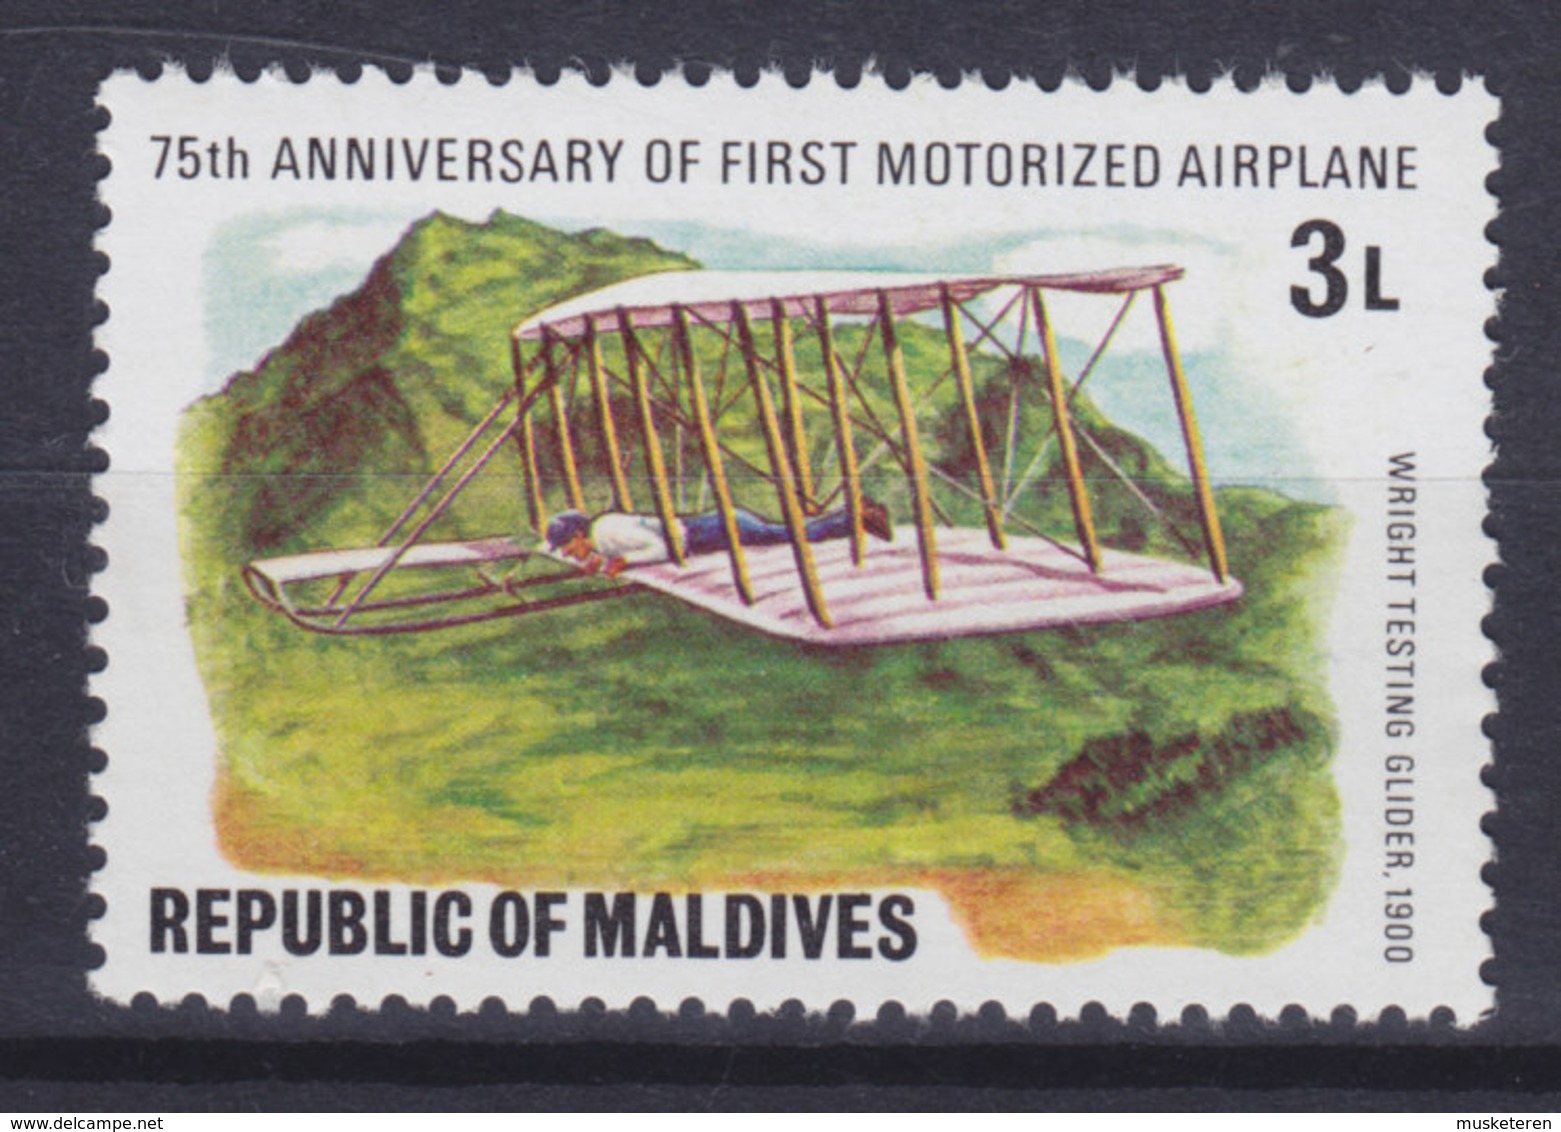 Maldives 1978 Mi. 742    3 L Motorflugzeuge Motor Airplanes Wright Testing Glider (1900), MNH** - Maldives (...-1965)